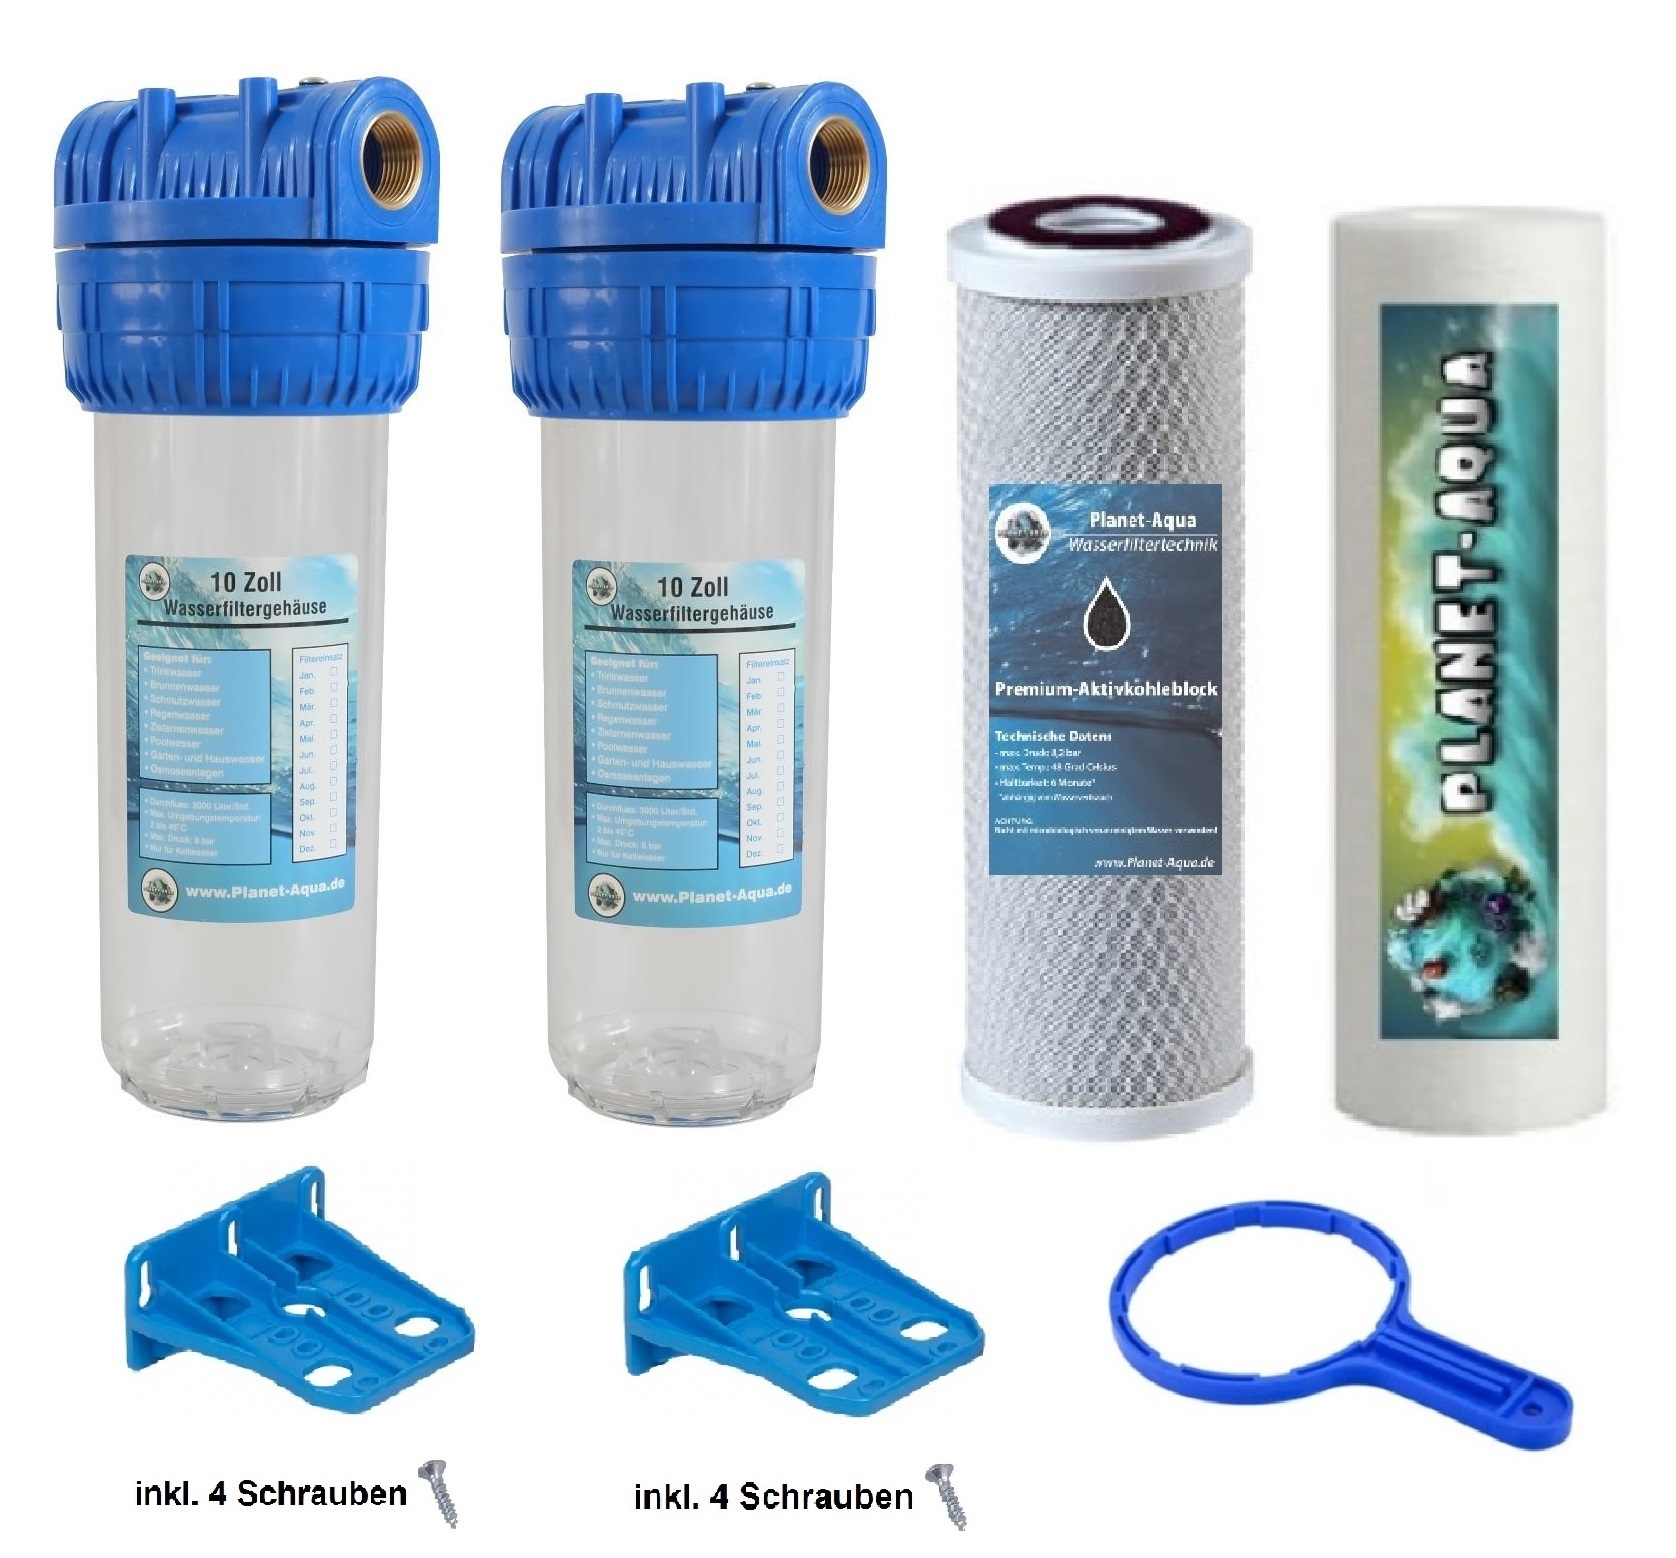 Wasserfiltergehäuse Set 2 x Filtergehäuse 10 Zoll inkl. Zubehör 1 x  Aktivkohleblock 1 x Sedimentfilter